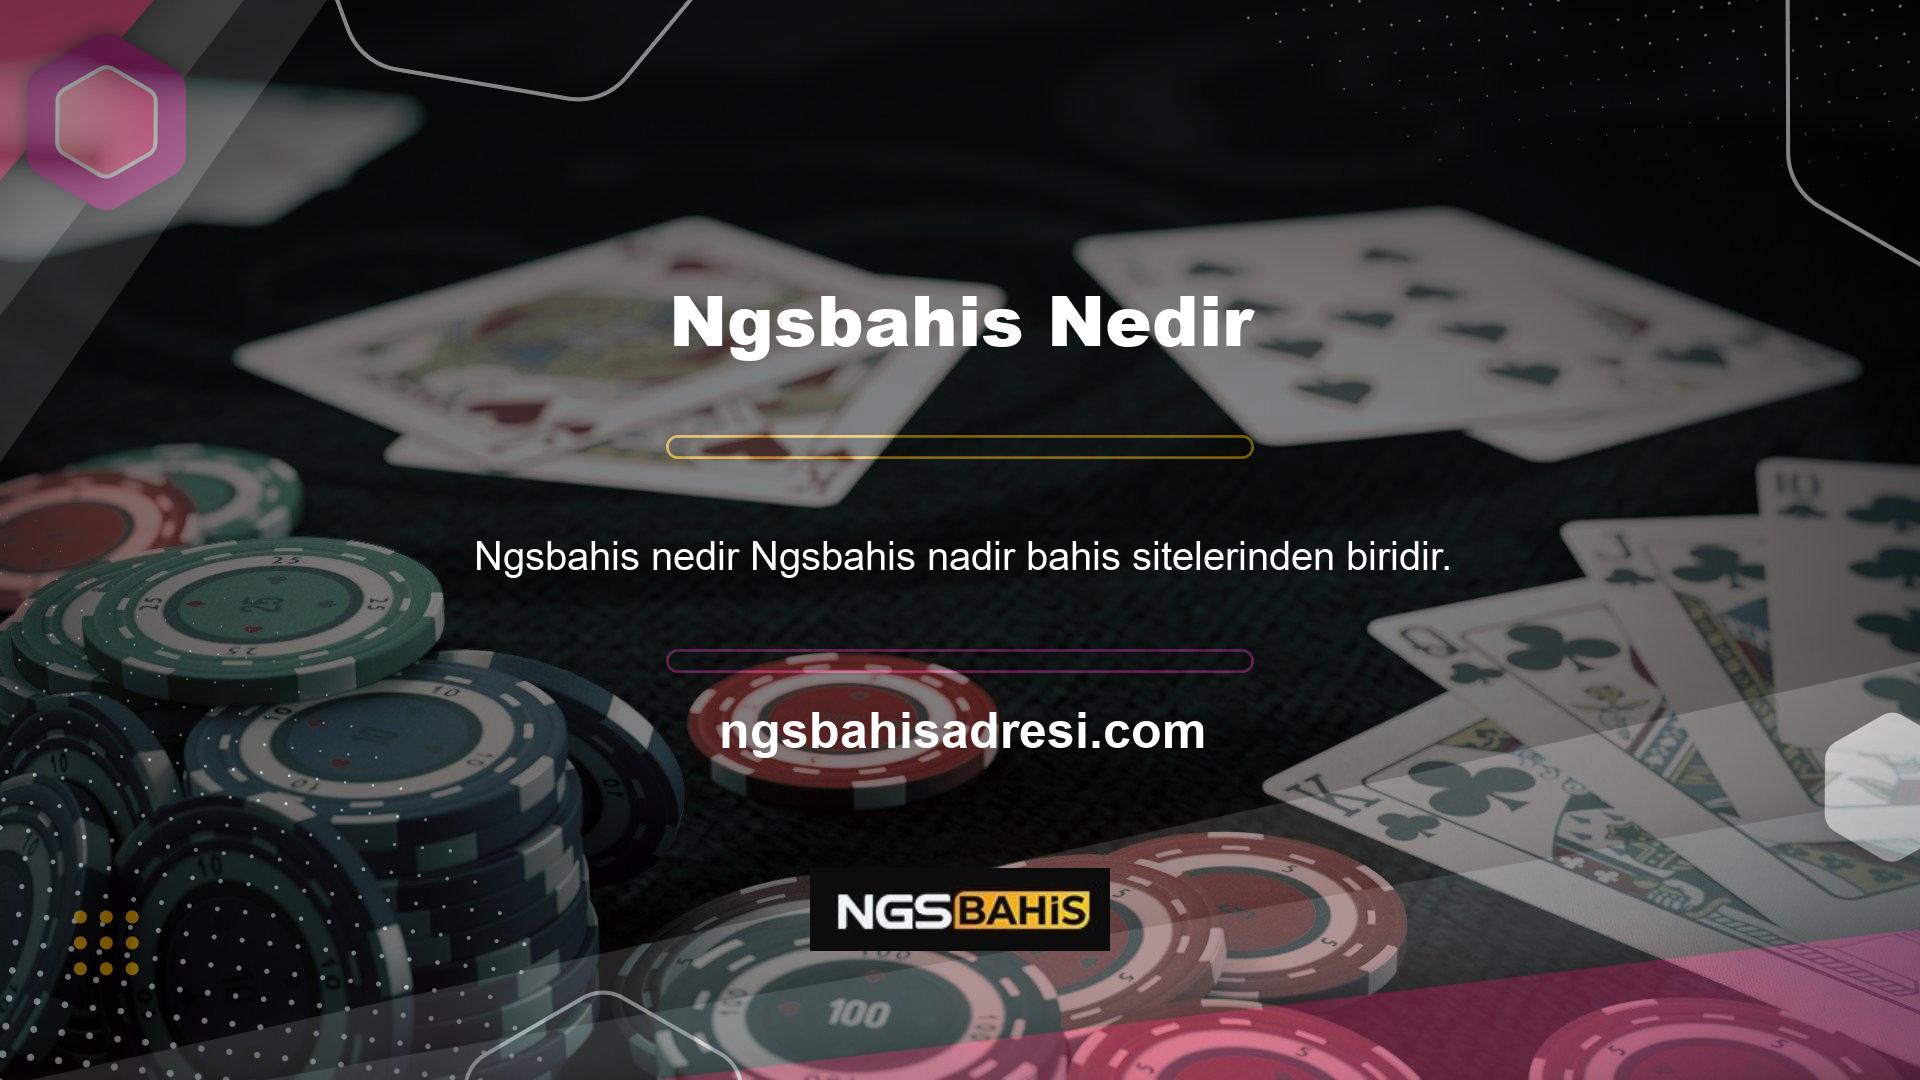 Mobil casino oyunlarını daha hızlı oynamanızı sağlayan mobil uygulamalar bulunmaktadır